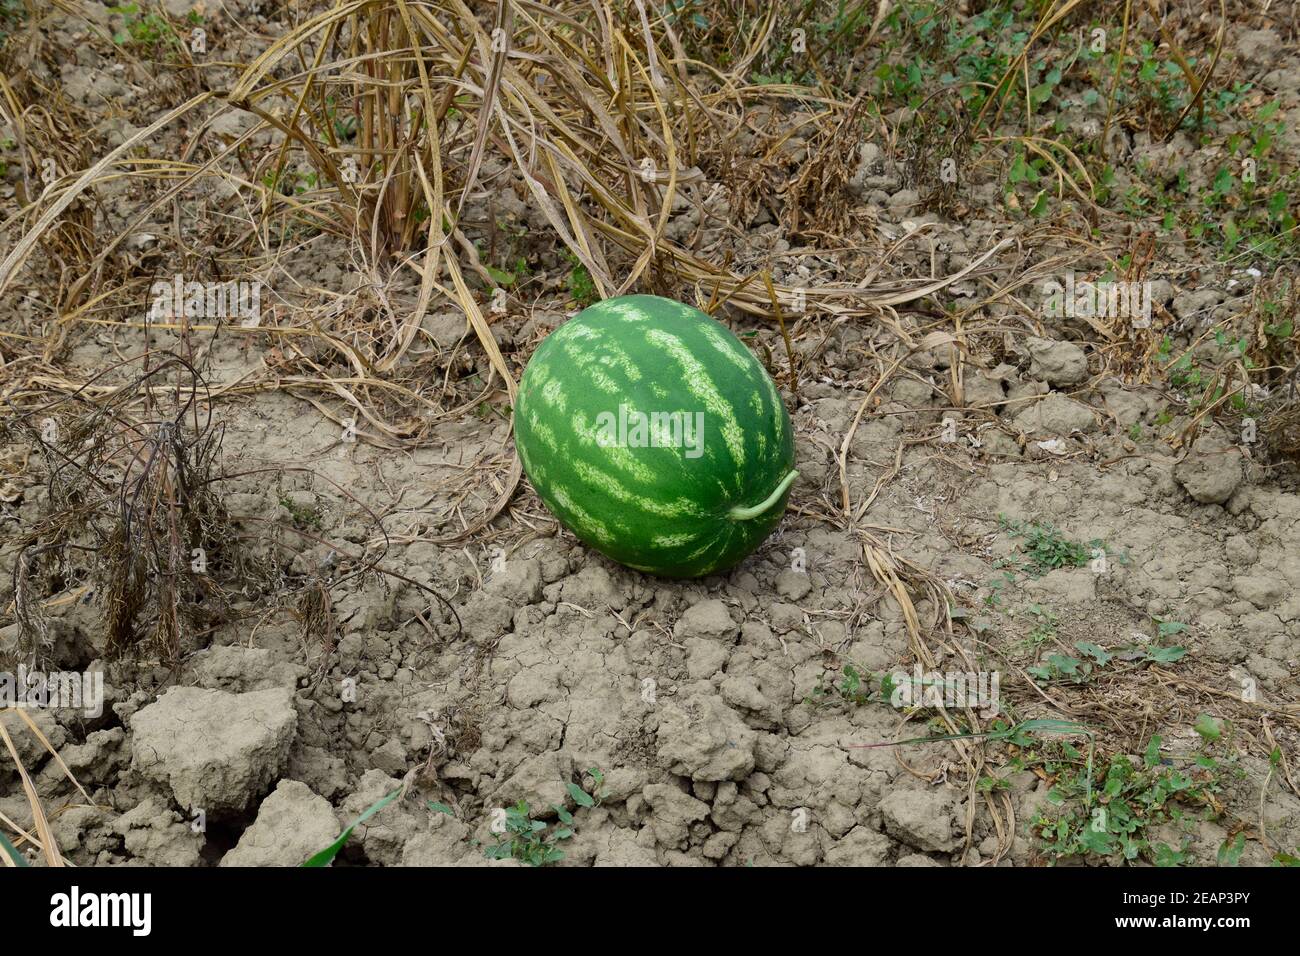 Wassermelone, aus dem Garten gepflückt, auf dem Boden liegend  Stockfotografie - Alamy